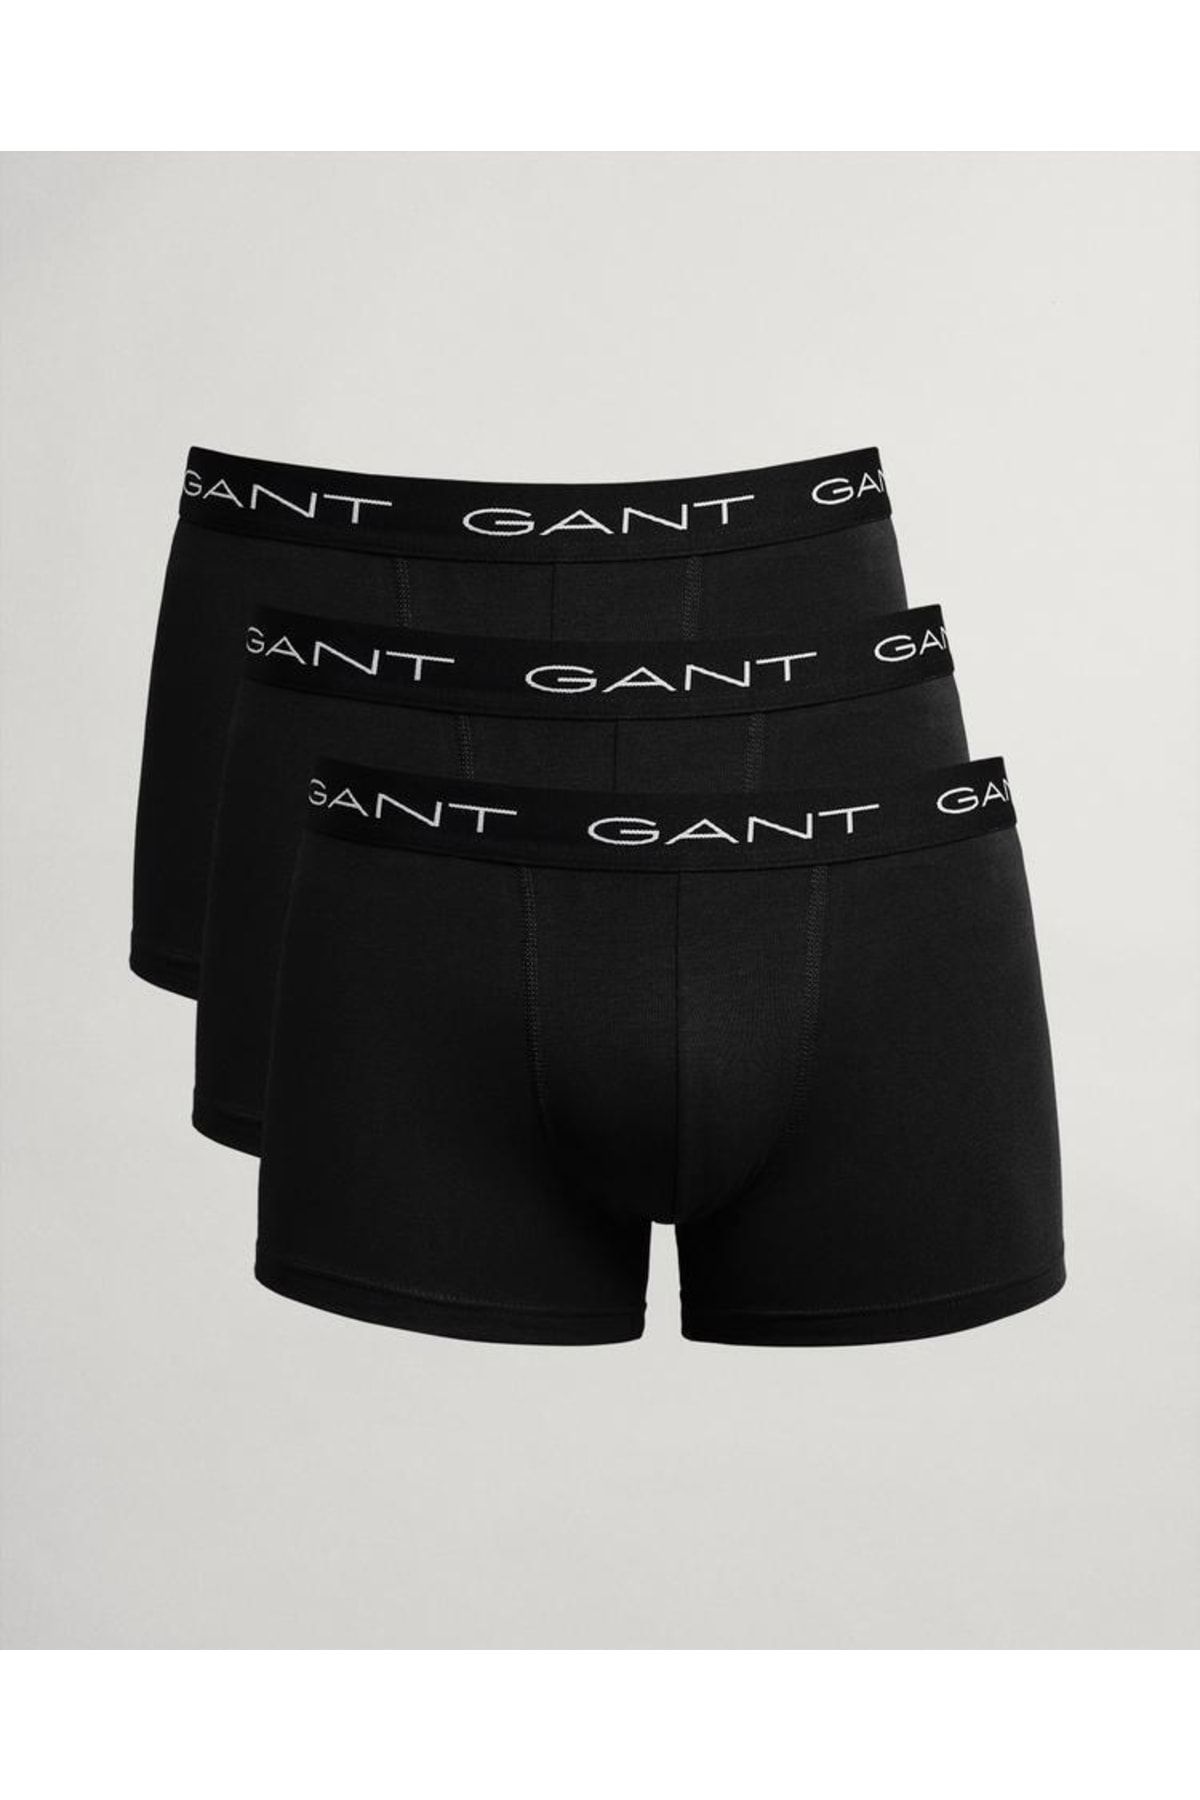 Gant Trunk 3-pack